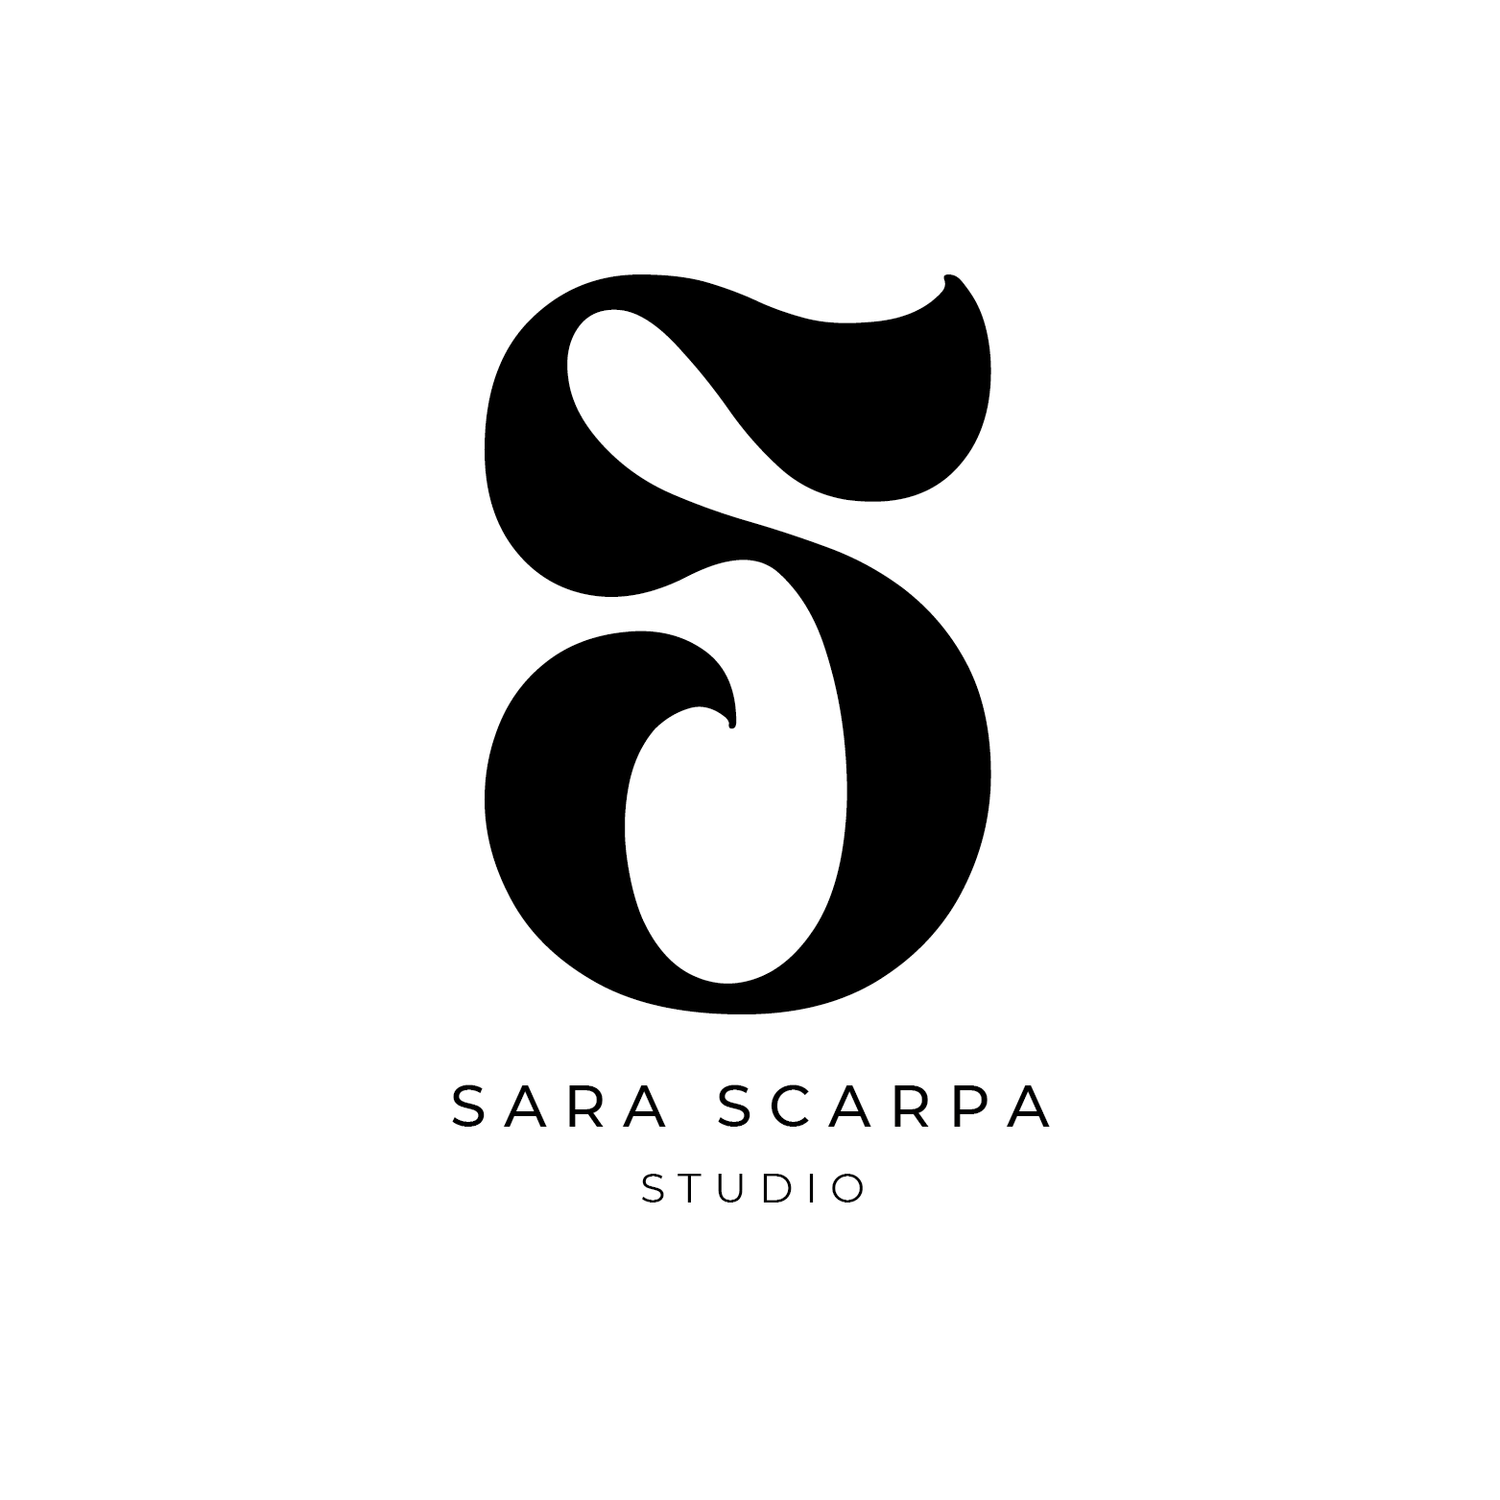 Sara Scarpa Studio